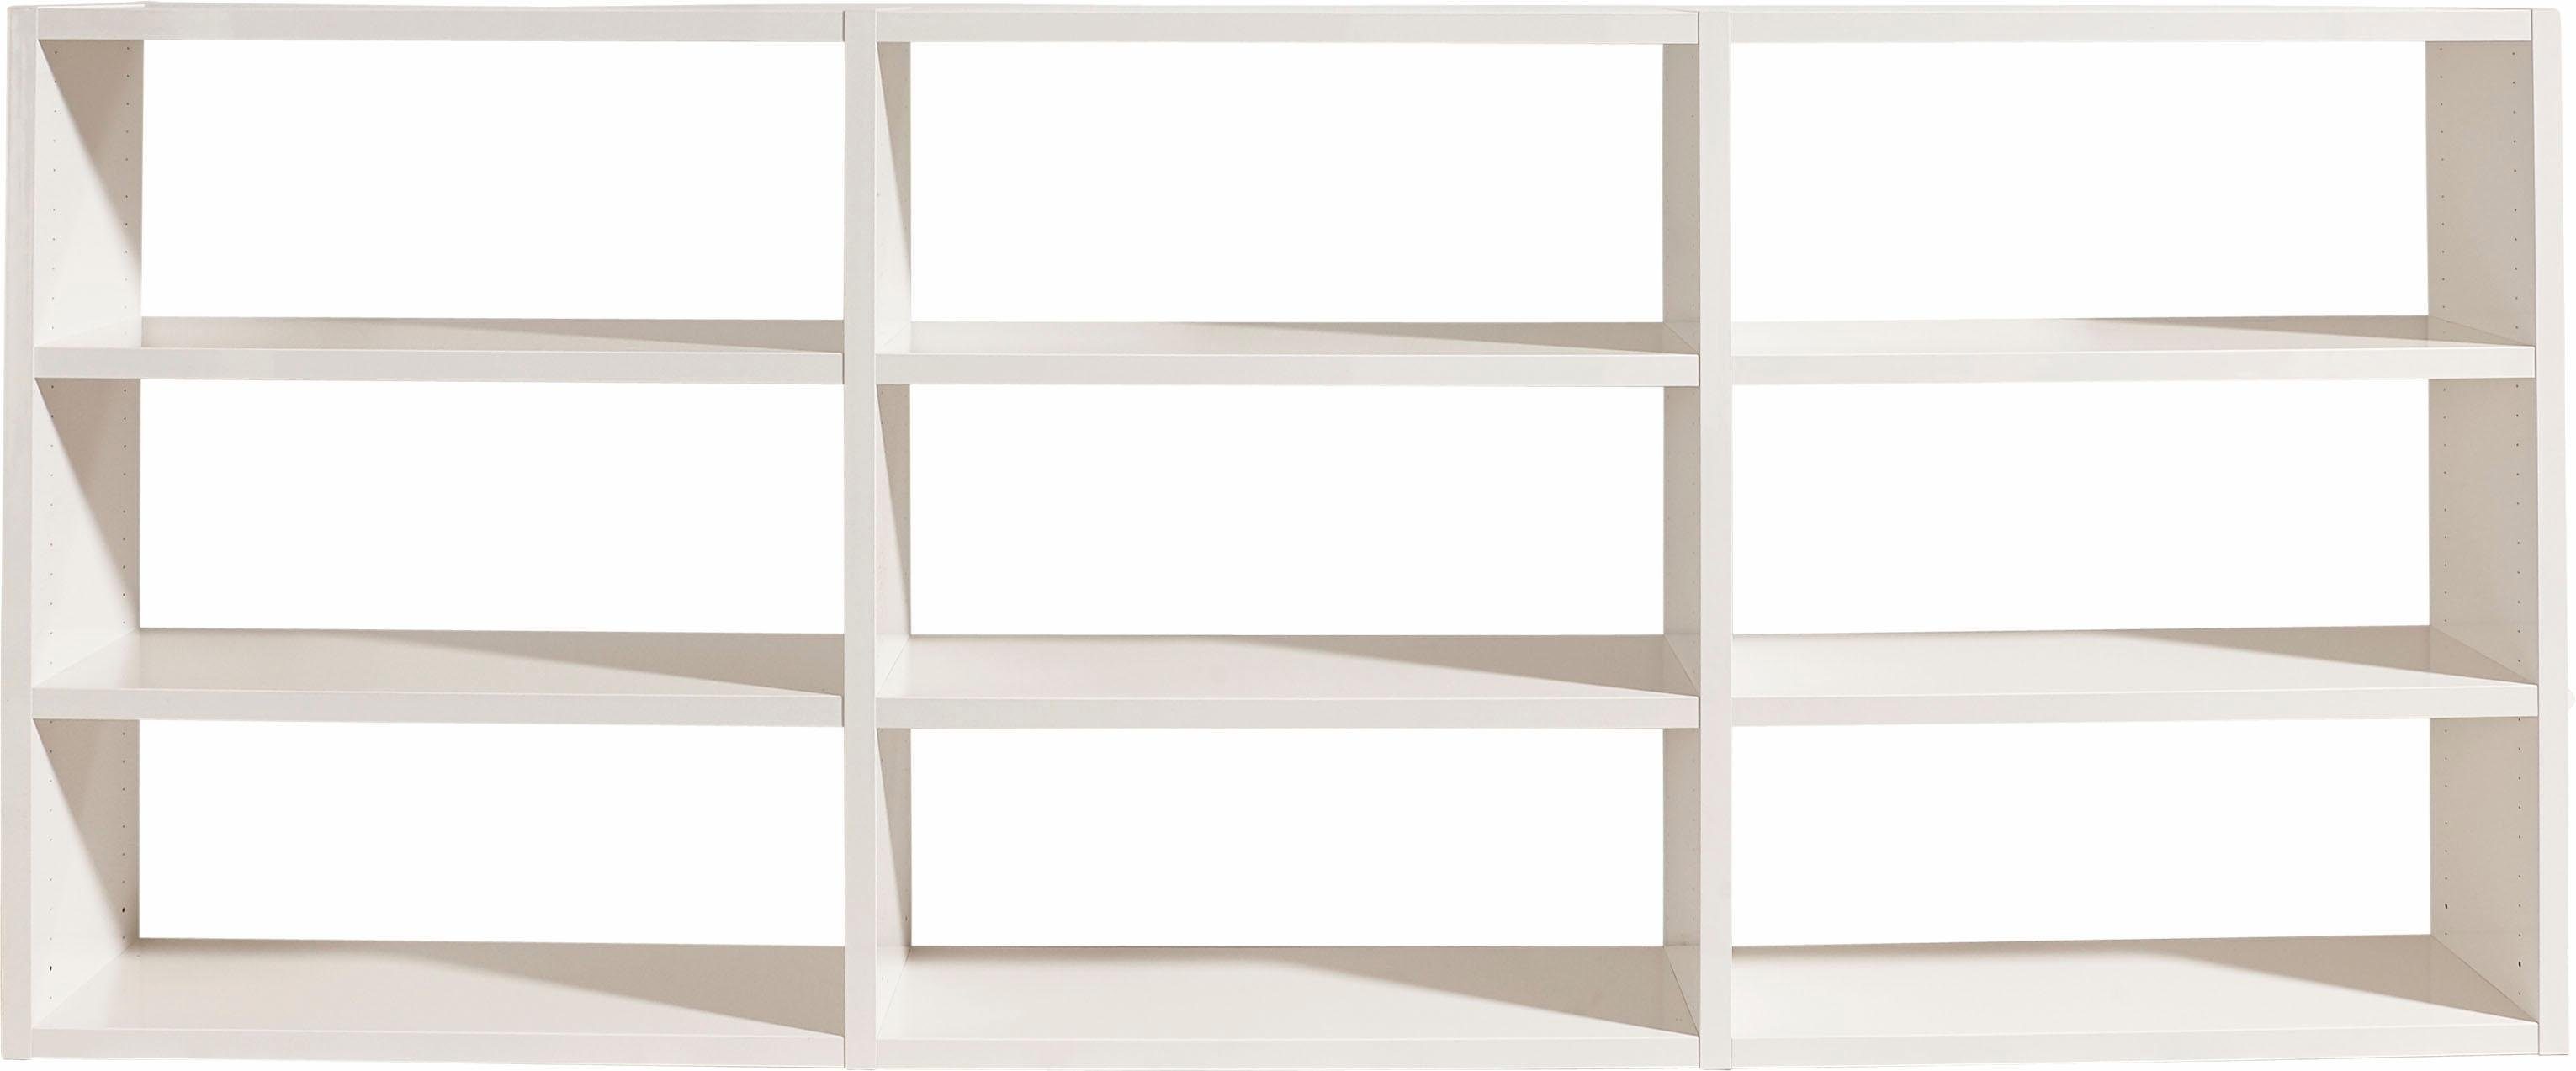 Weiß möbel 9 Fächer, 275,8 fif Hochglanz Toro, Breite Raumteilerregal cm